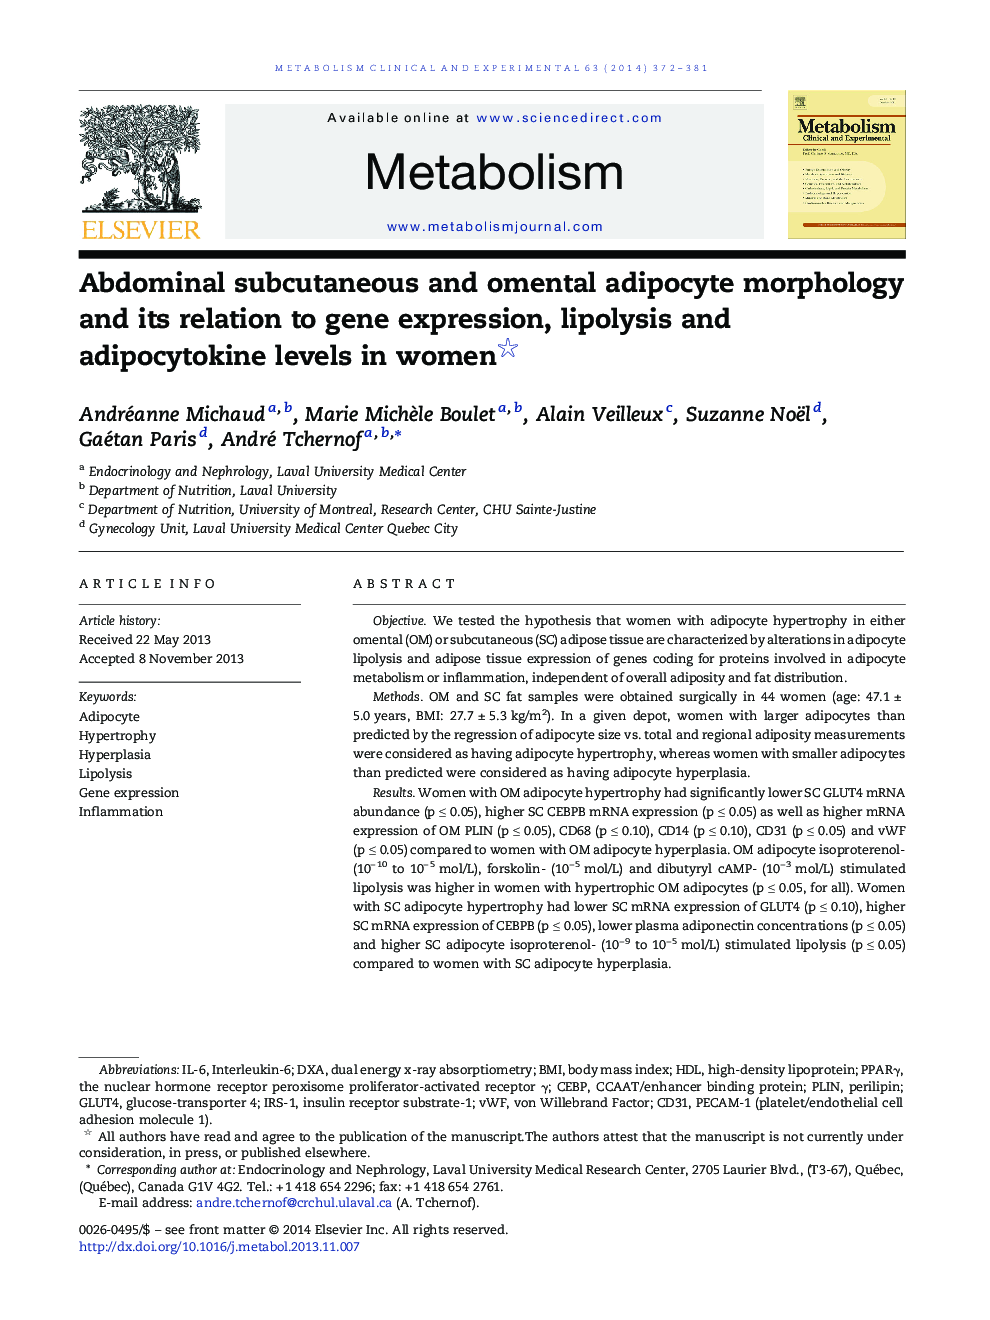 مورفولوژی آدیپوسیت زیر جلدی و آدنومیوم شکم و ارتباط آن با بیان ژن، لیپولیز و آدیپو سیتوکین در زنان 